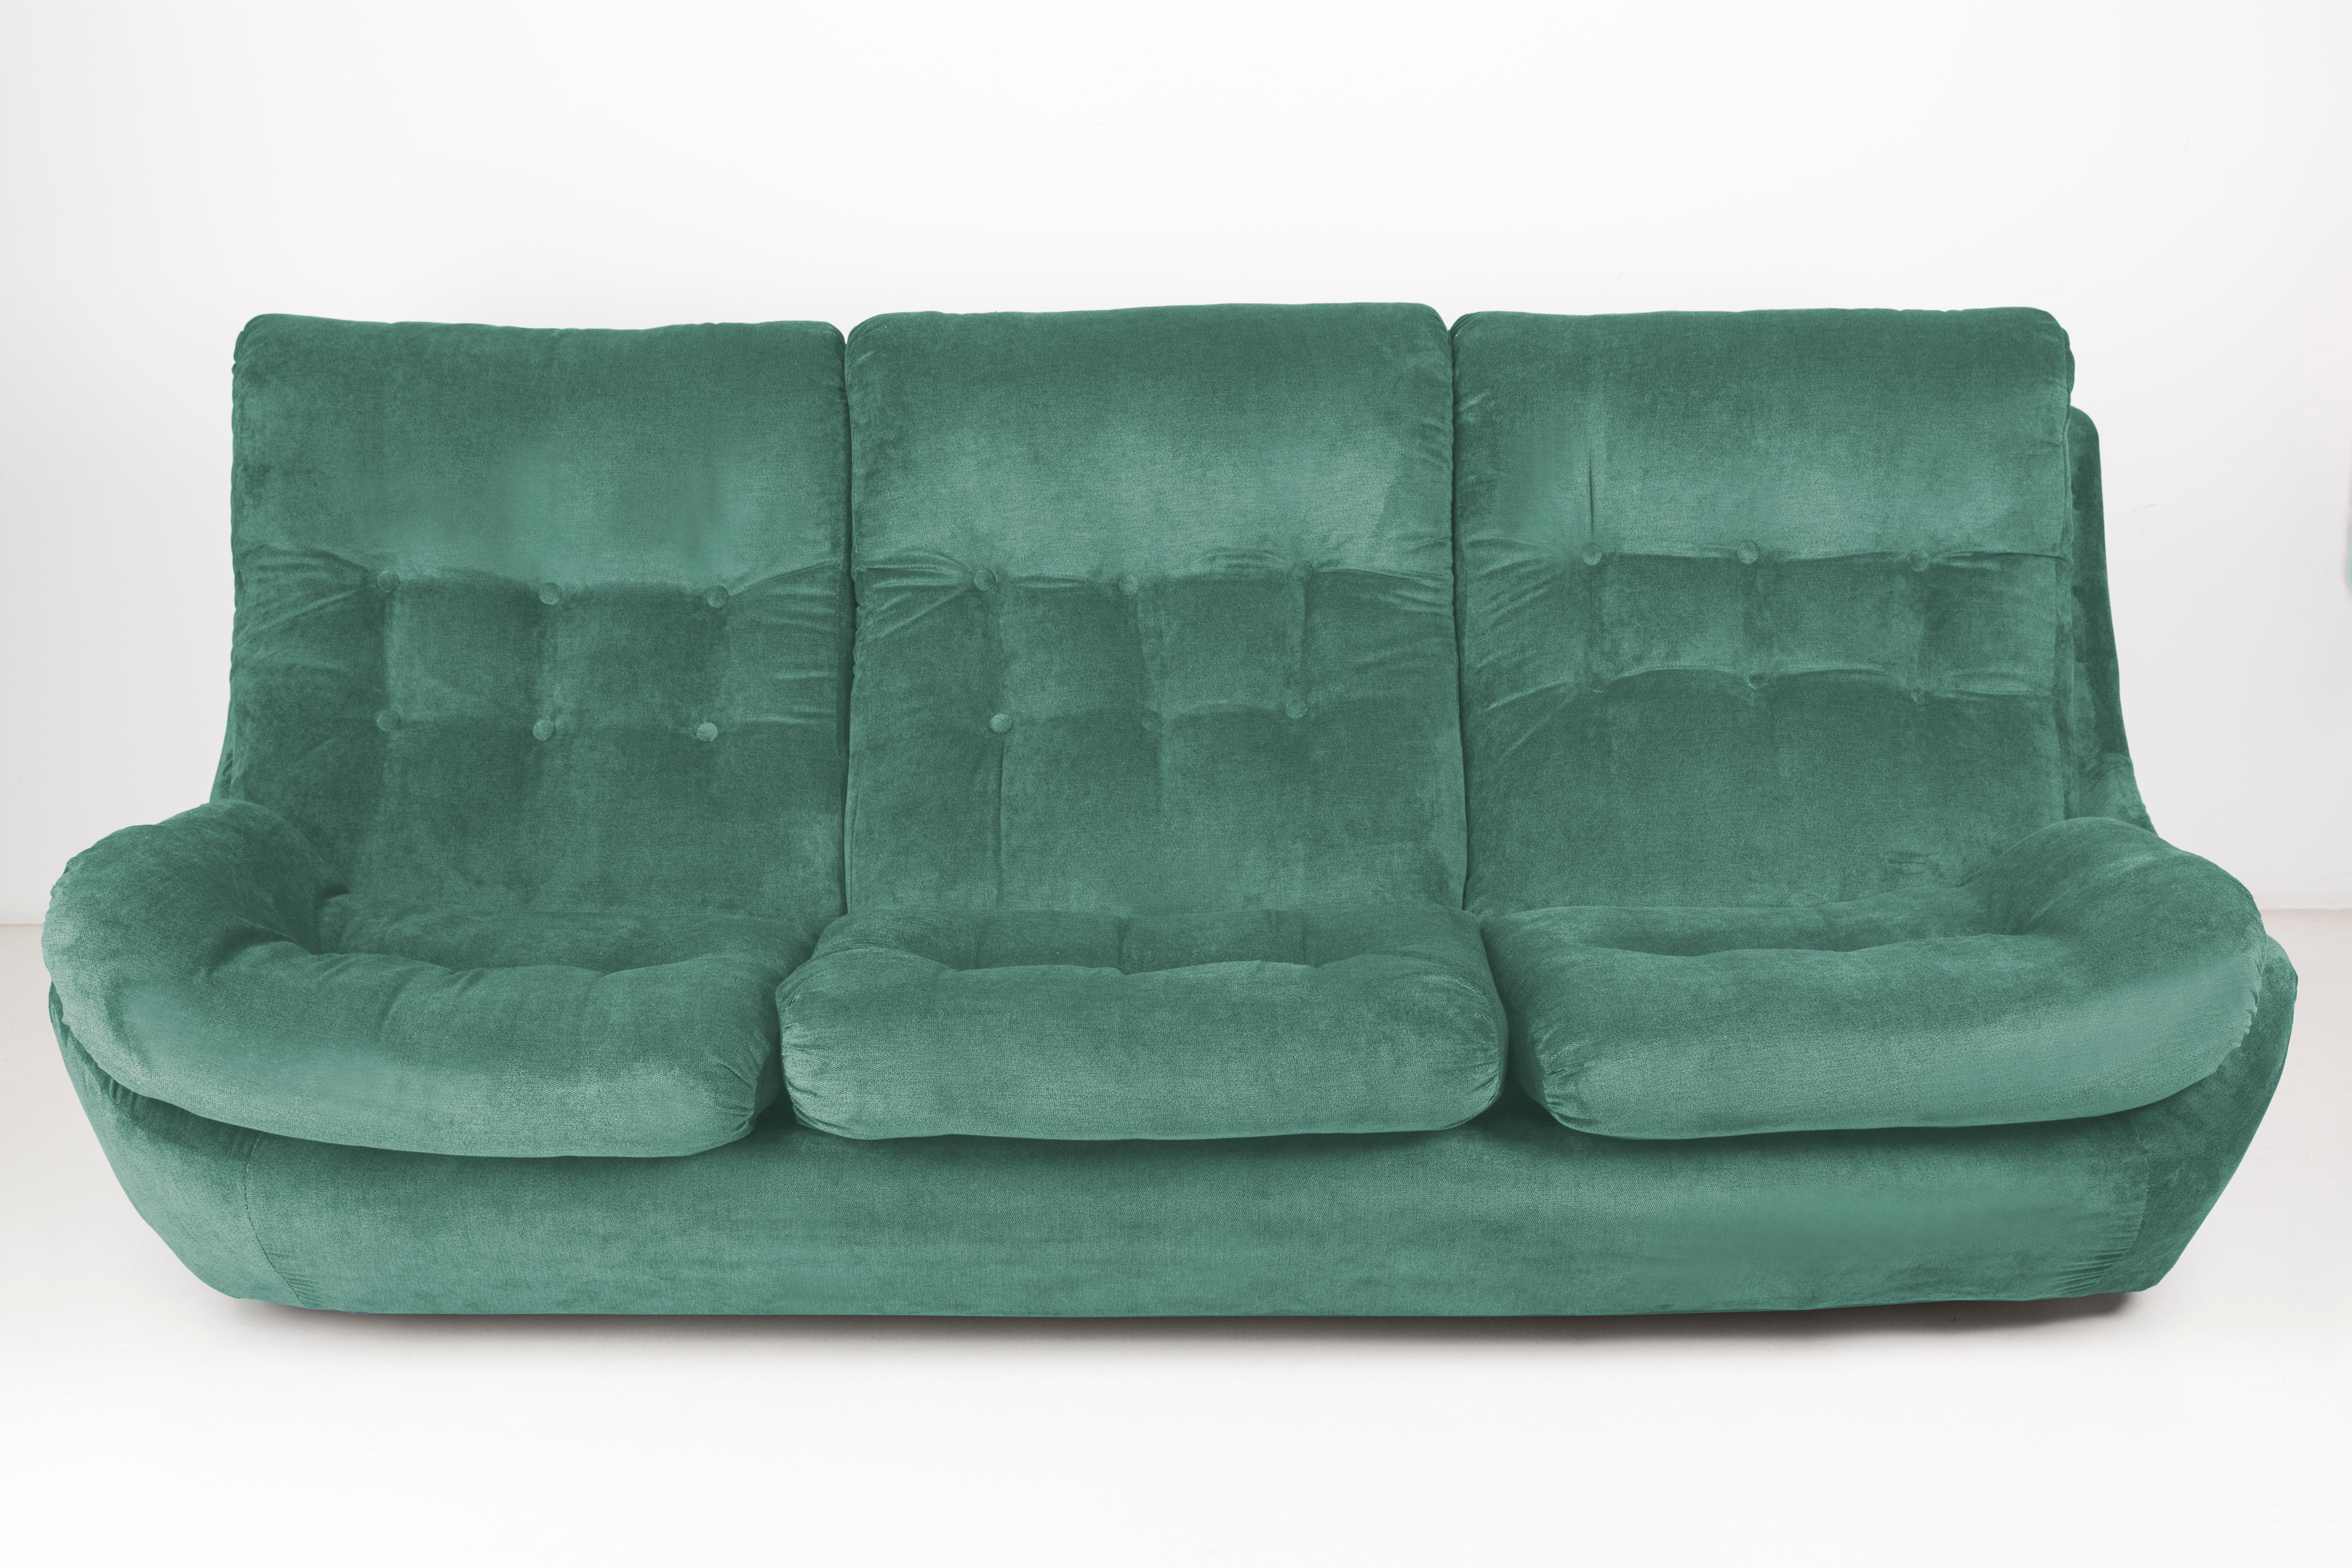 Atlantis-Sofa aus den 1960er Jahren, hergestellt in der Tschechischen Republik - zur Zeit ein Unikat. Aufgrund ihrer Abmessungen passen sie perfekt in Wohnungen und bieten Komfort und schöne Dekoration. Bezogen mit hochwertigem Samtstoff, ein